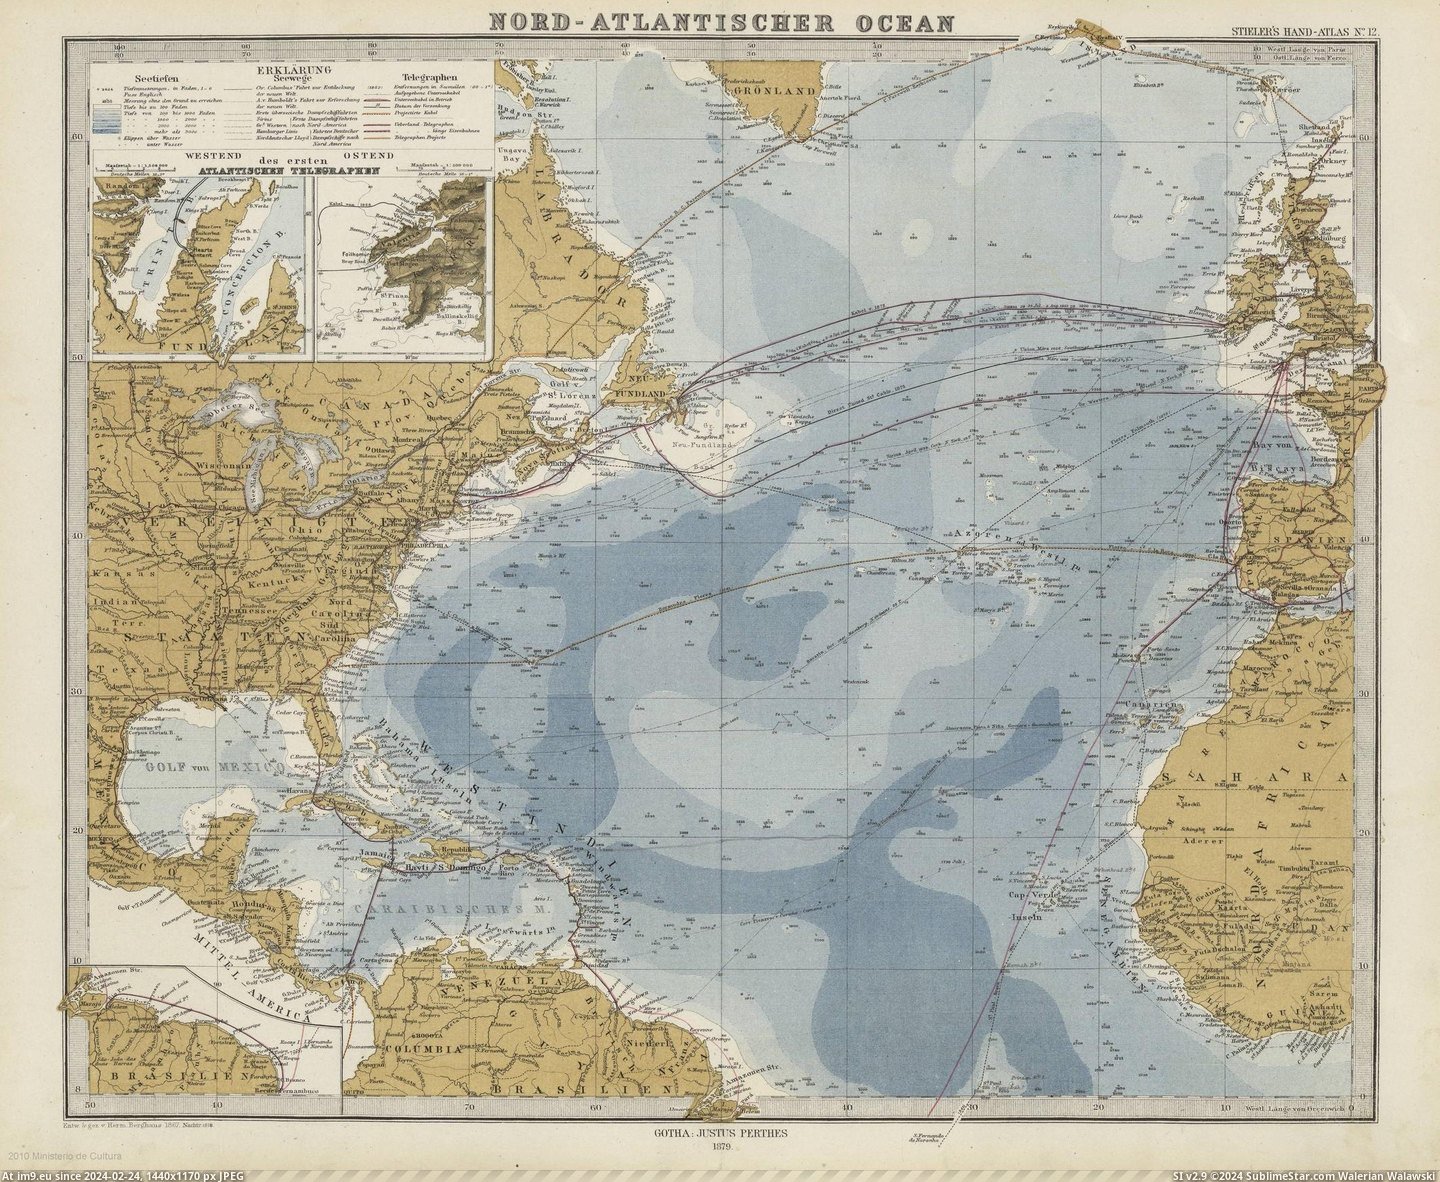 #Map #North #Atlantic #Herman #Berghaus #Routes #Crossing [Mapporn] Map of the North Atlantic and crossing routes from 1878 by Herman Berghaus [2,126 x 1,740] Pic. (Image of album My r/MAPS favs))